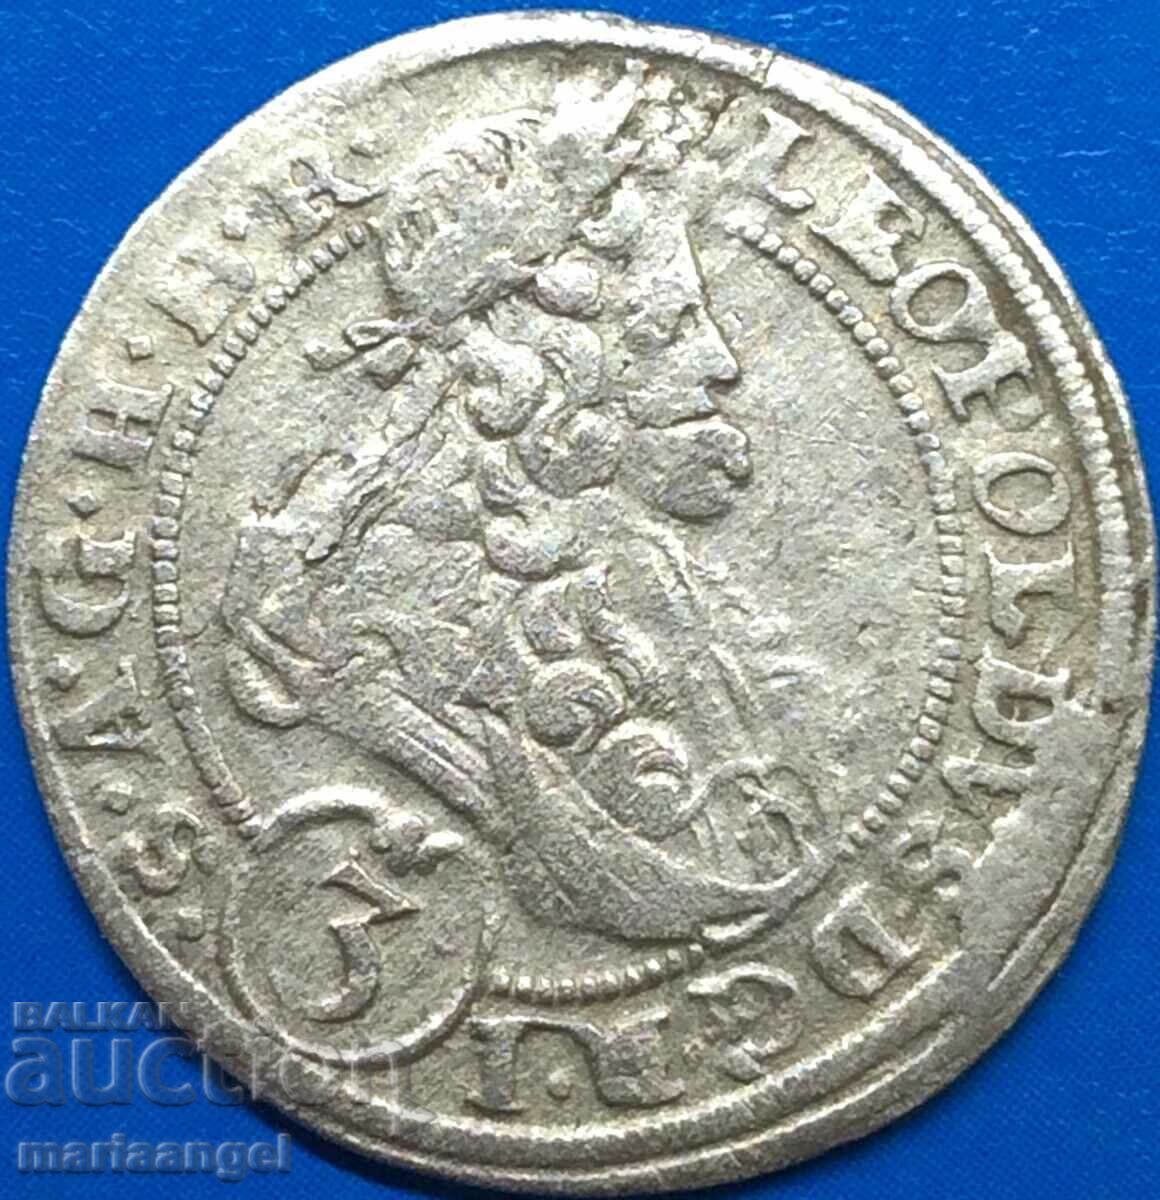 Silesia 3 Kreuzer 1696 Leopold Austria silver